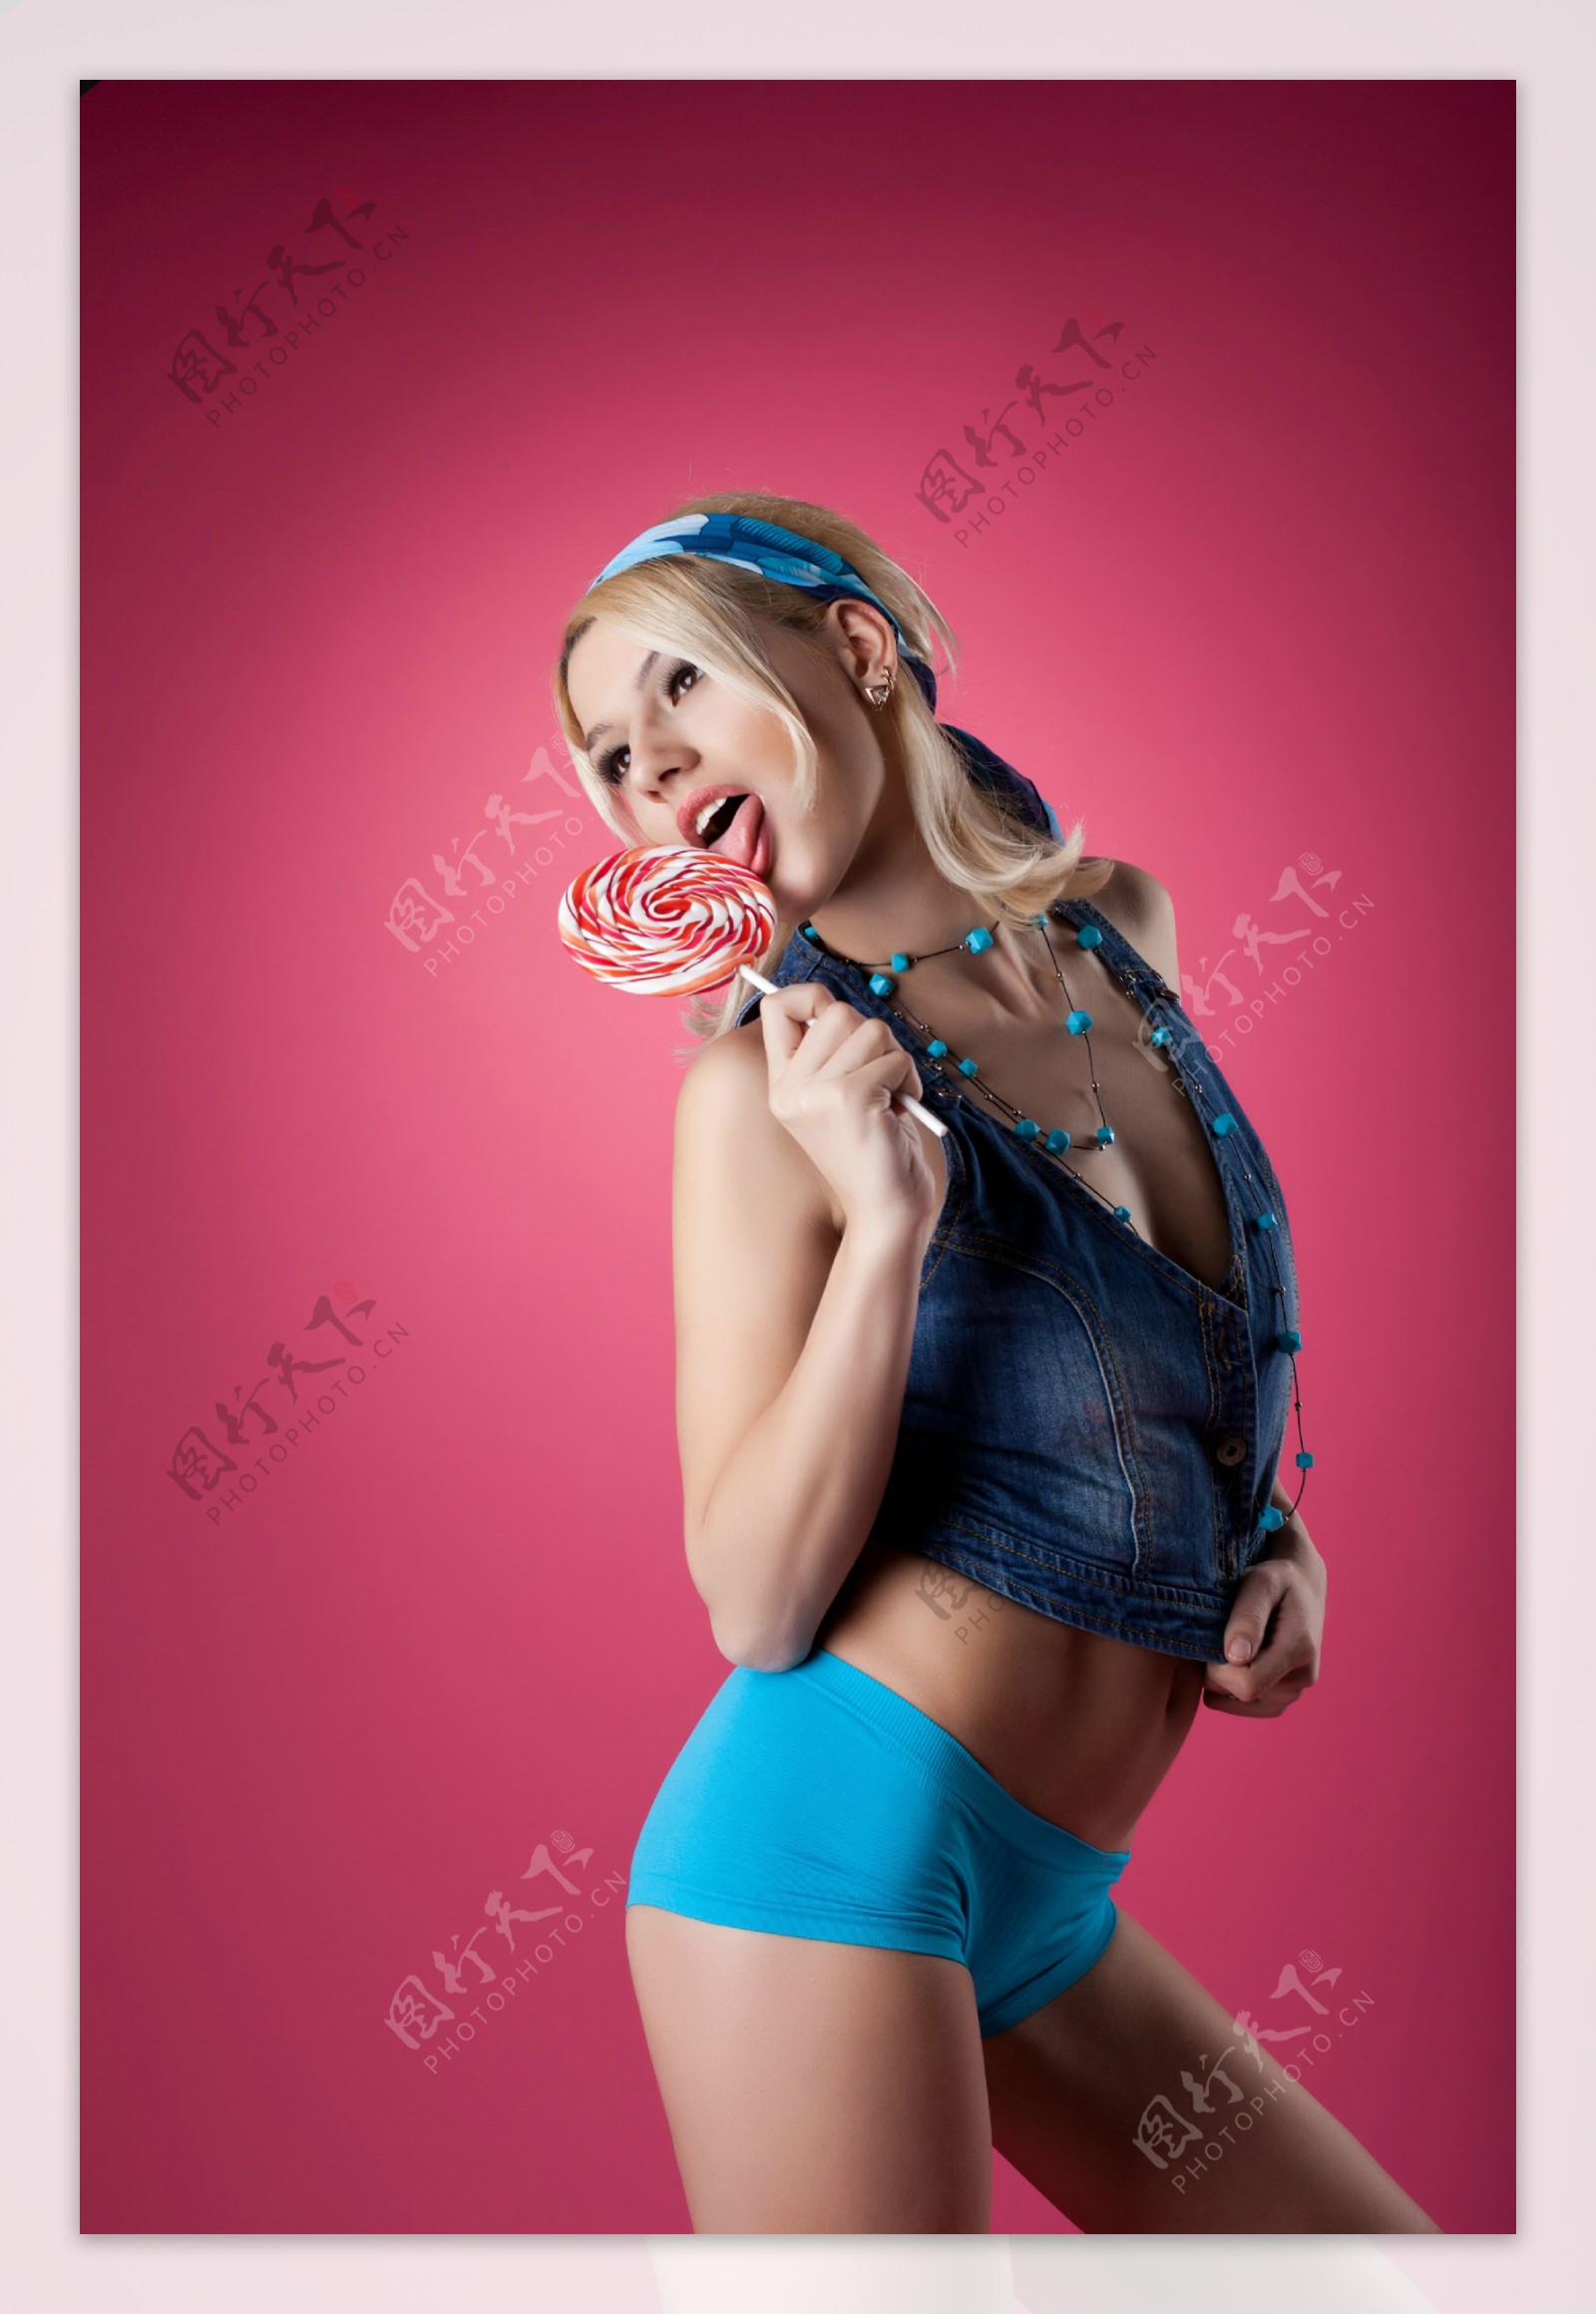 吃棒棒糖的性感美女图片